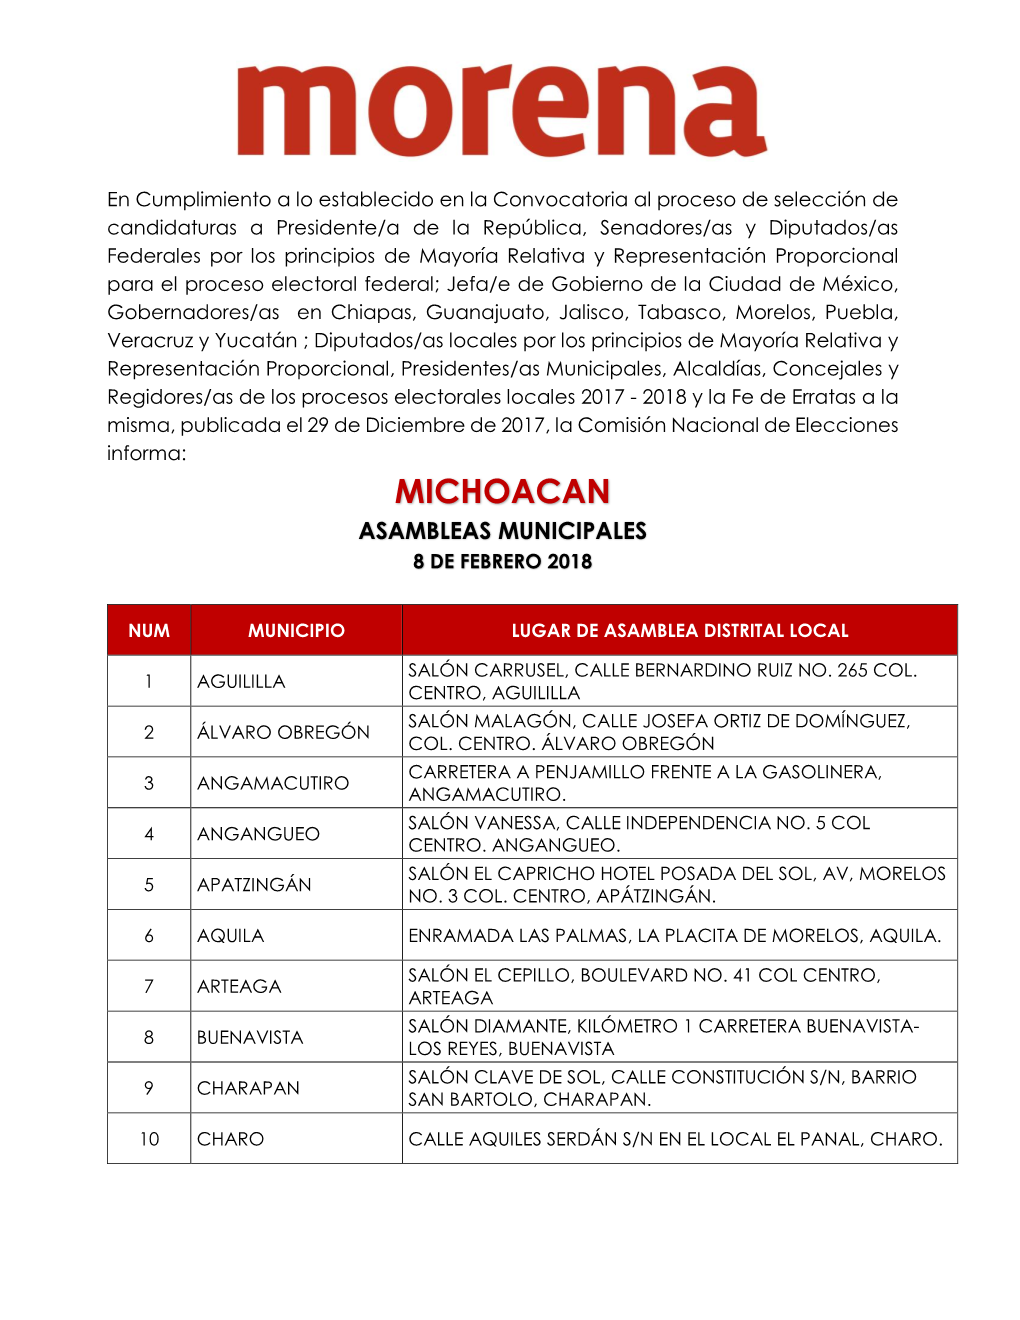 Michoacan Asambleas Municipales 8 De Febrero 2018